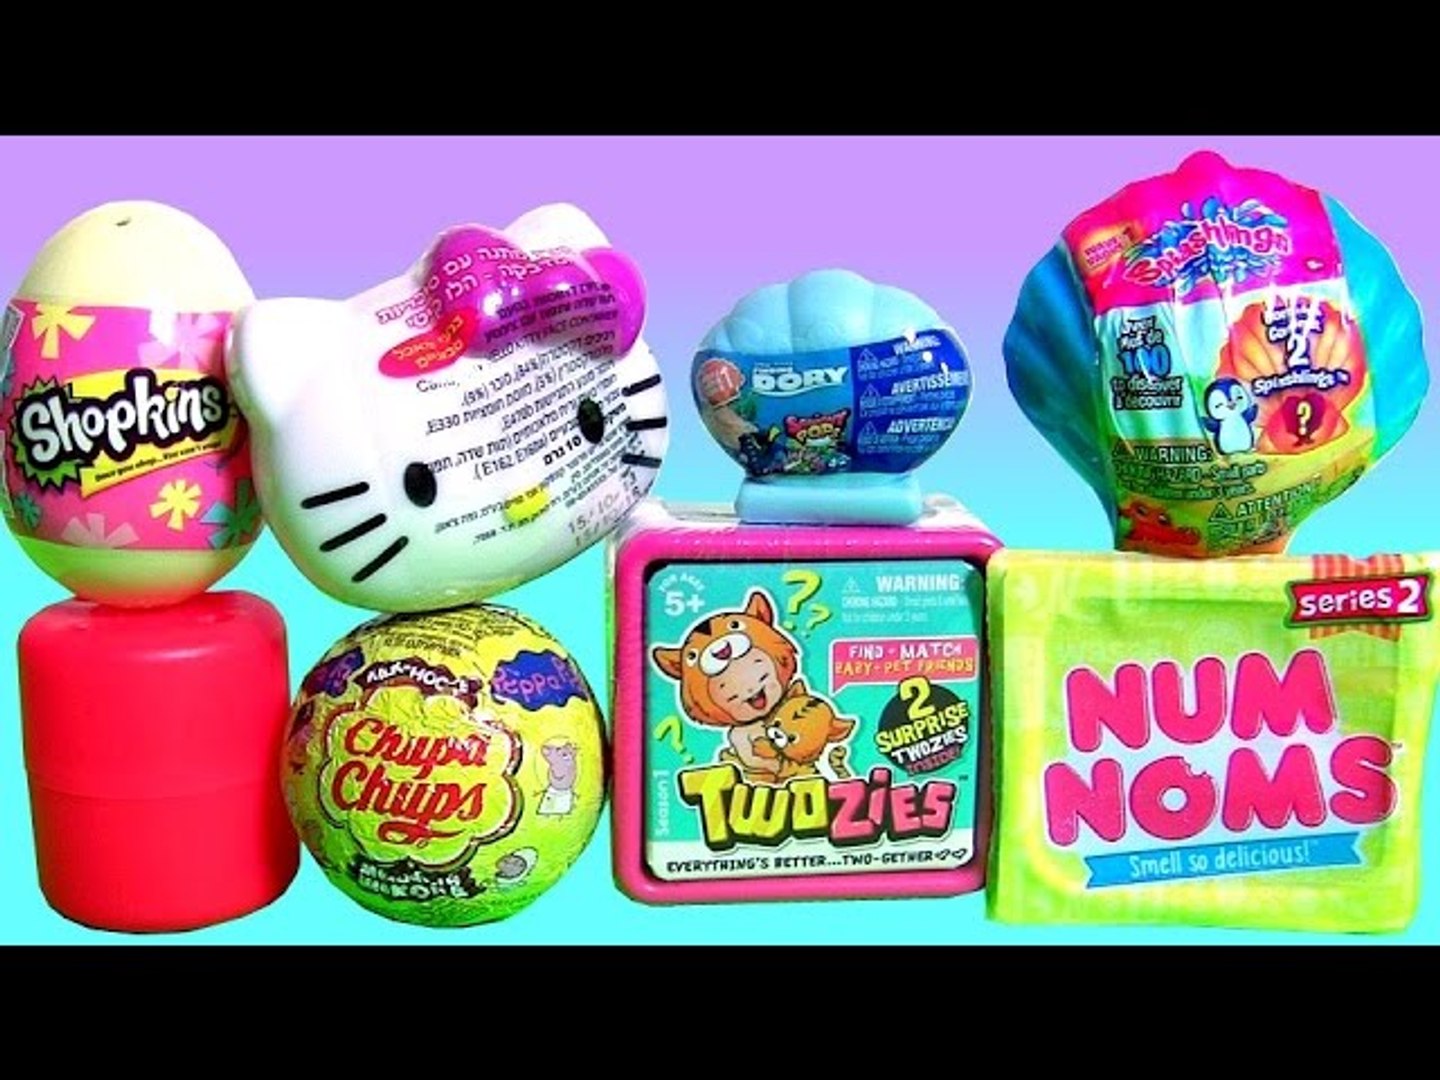 Num Noms Novelty Surprise Toys